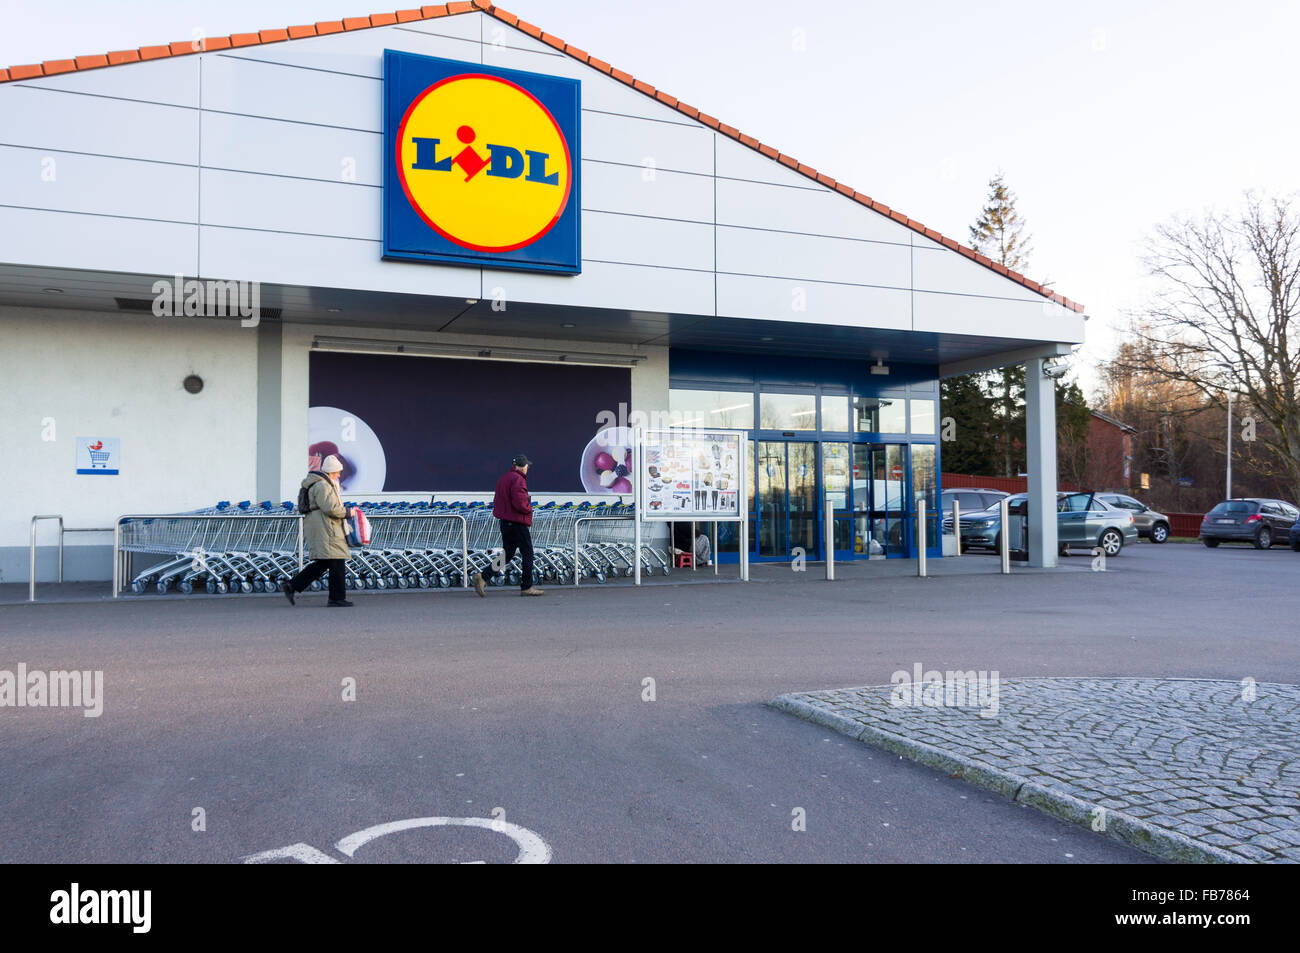 Entrada a Lidl, la cadena de supermercados de descuento alemana. Modelo de  liberación: nº de propiedad: Release No Fotografía de stock - Alamy